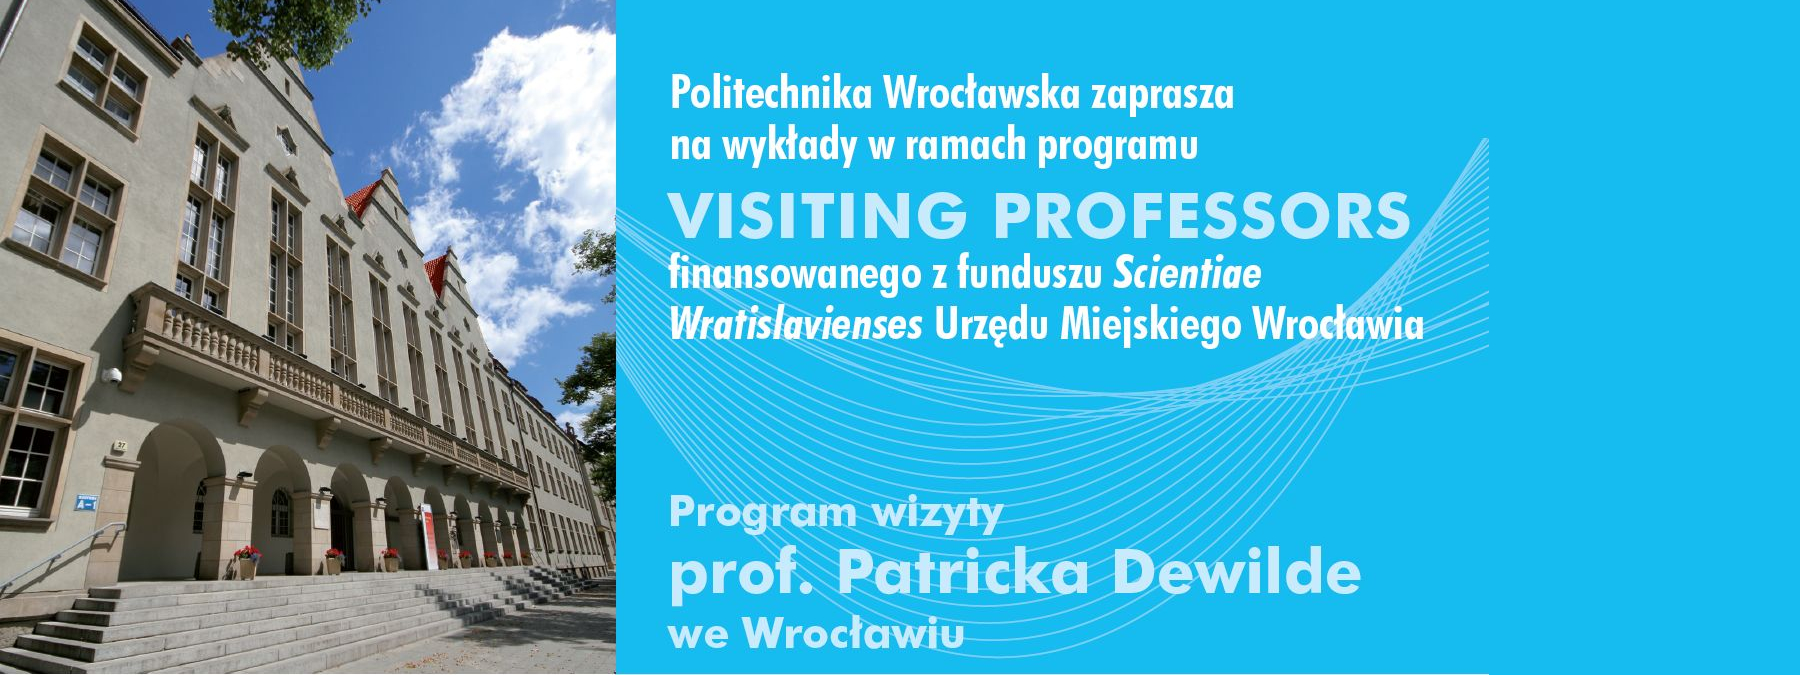 Zaproszenie na wykłady Politechnika Wrocławska_2013